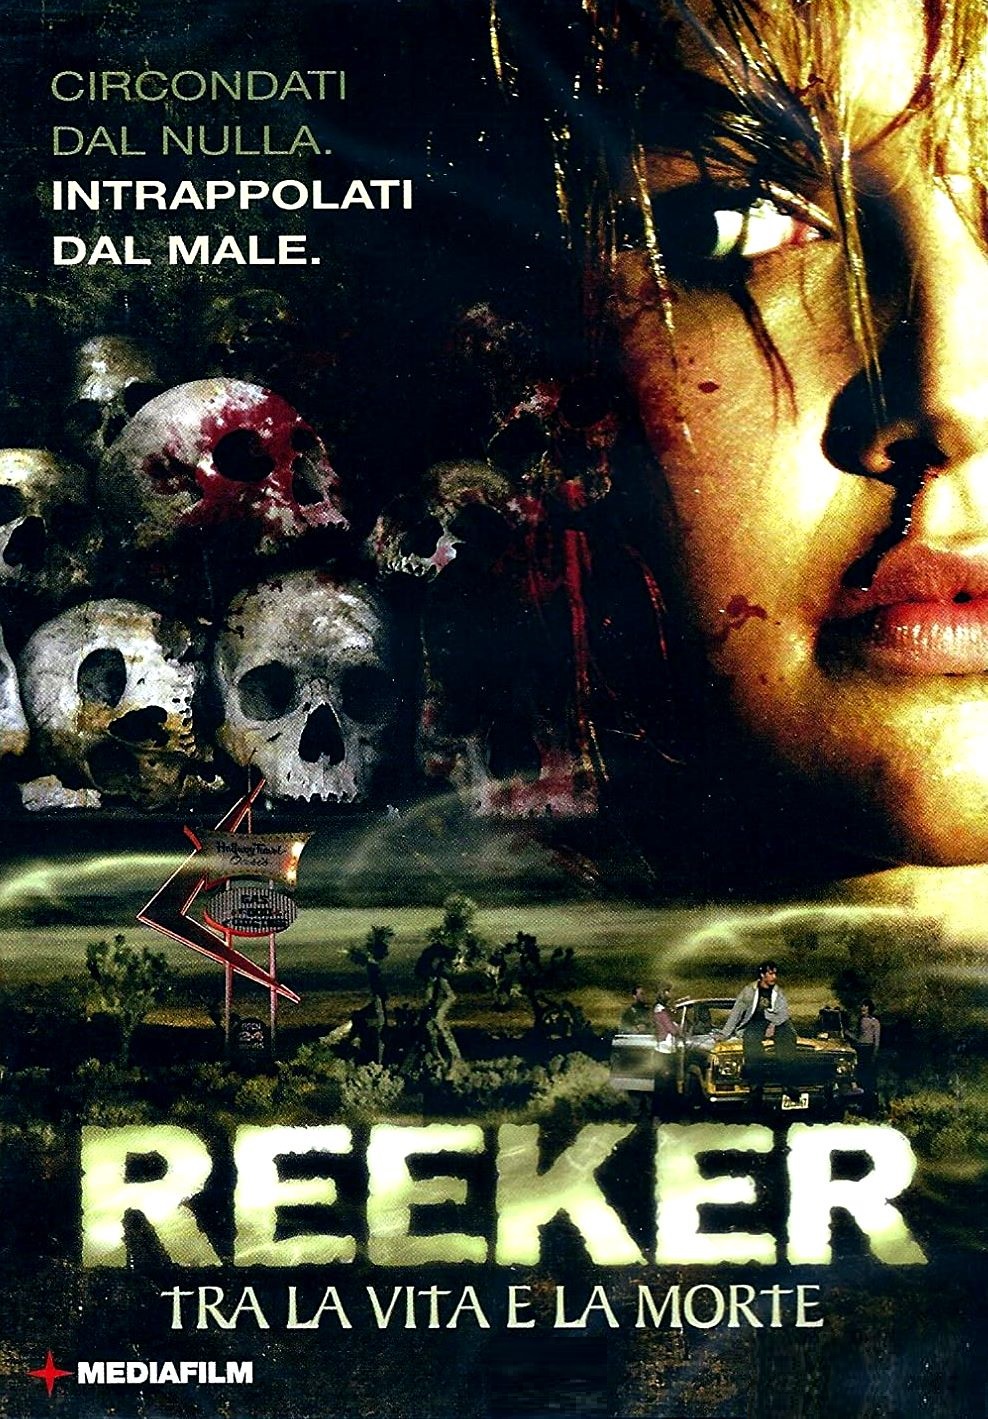 Reeker – Tra la vita e la morte (2005)